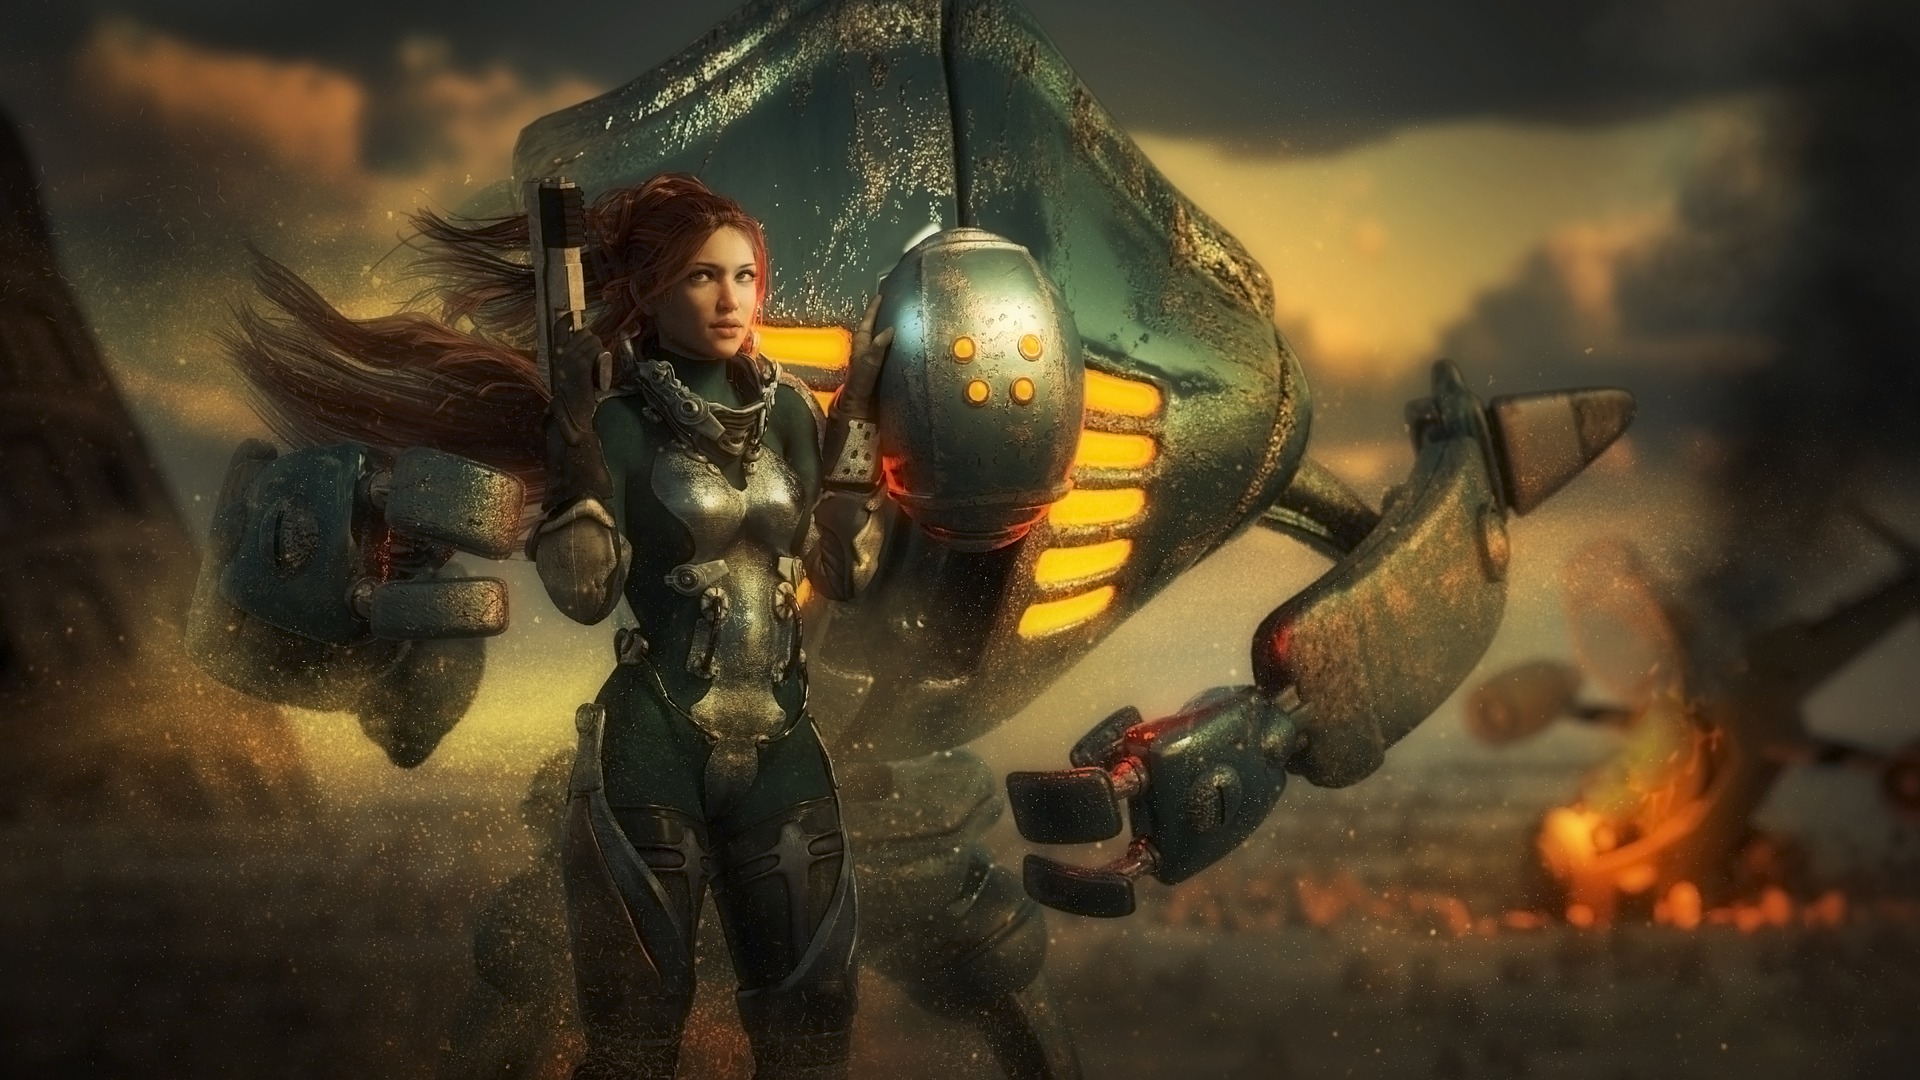 Büyük bir robotun önünde duran savaşçı kız etrafa bakıyor.